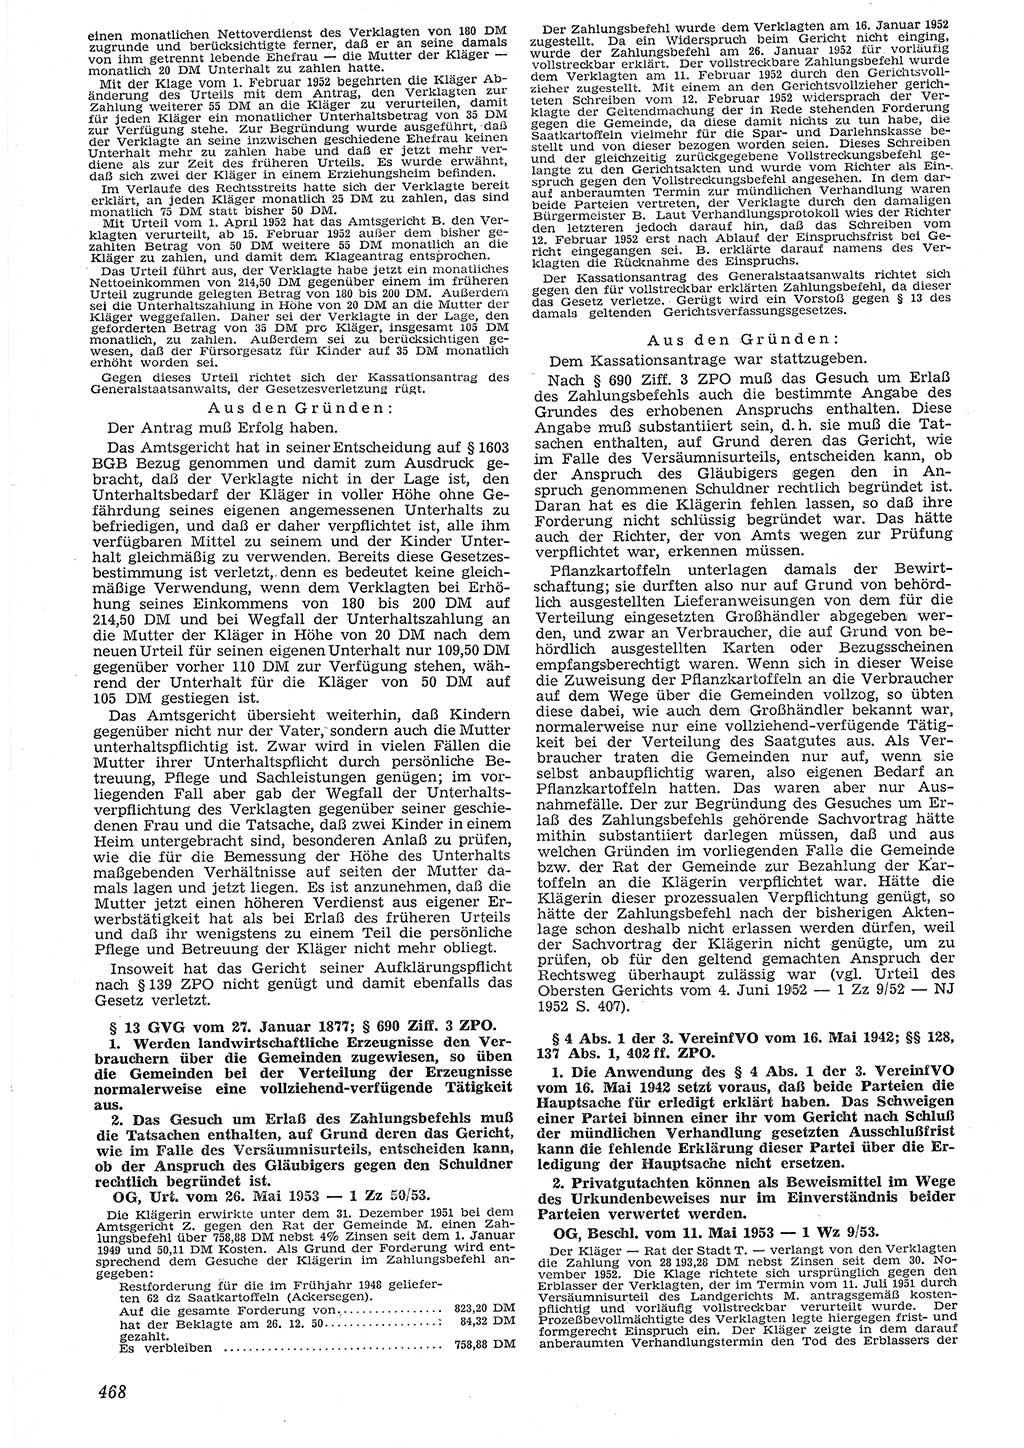 Neue Justiz (NJ), Zeitschrift für Recht und Rechtswissenschaft [Deutsche Demokratische Republik (DDR)], 7. Jahrgang 1953, Seite 468 (NJ DDR 1953, S. 468)